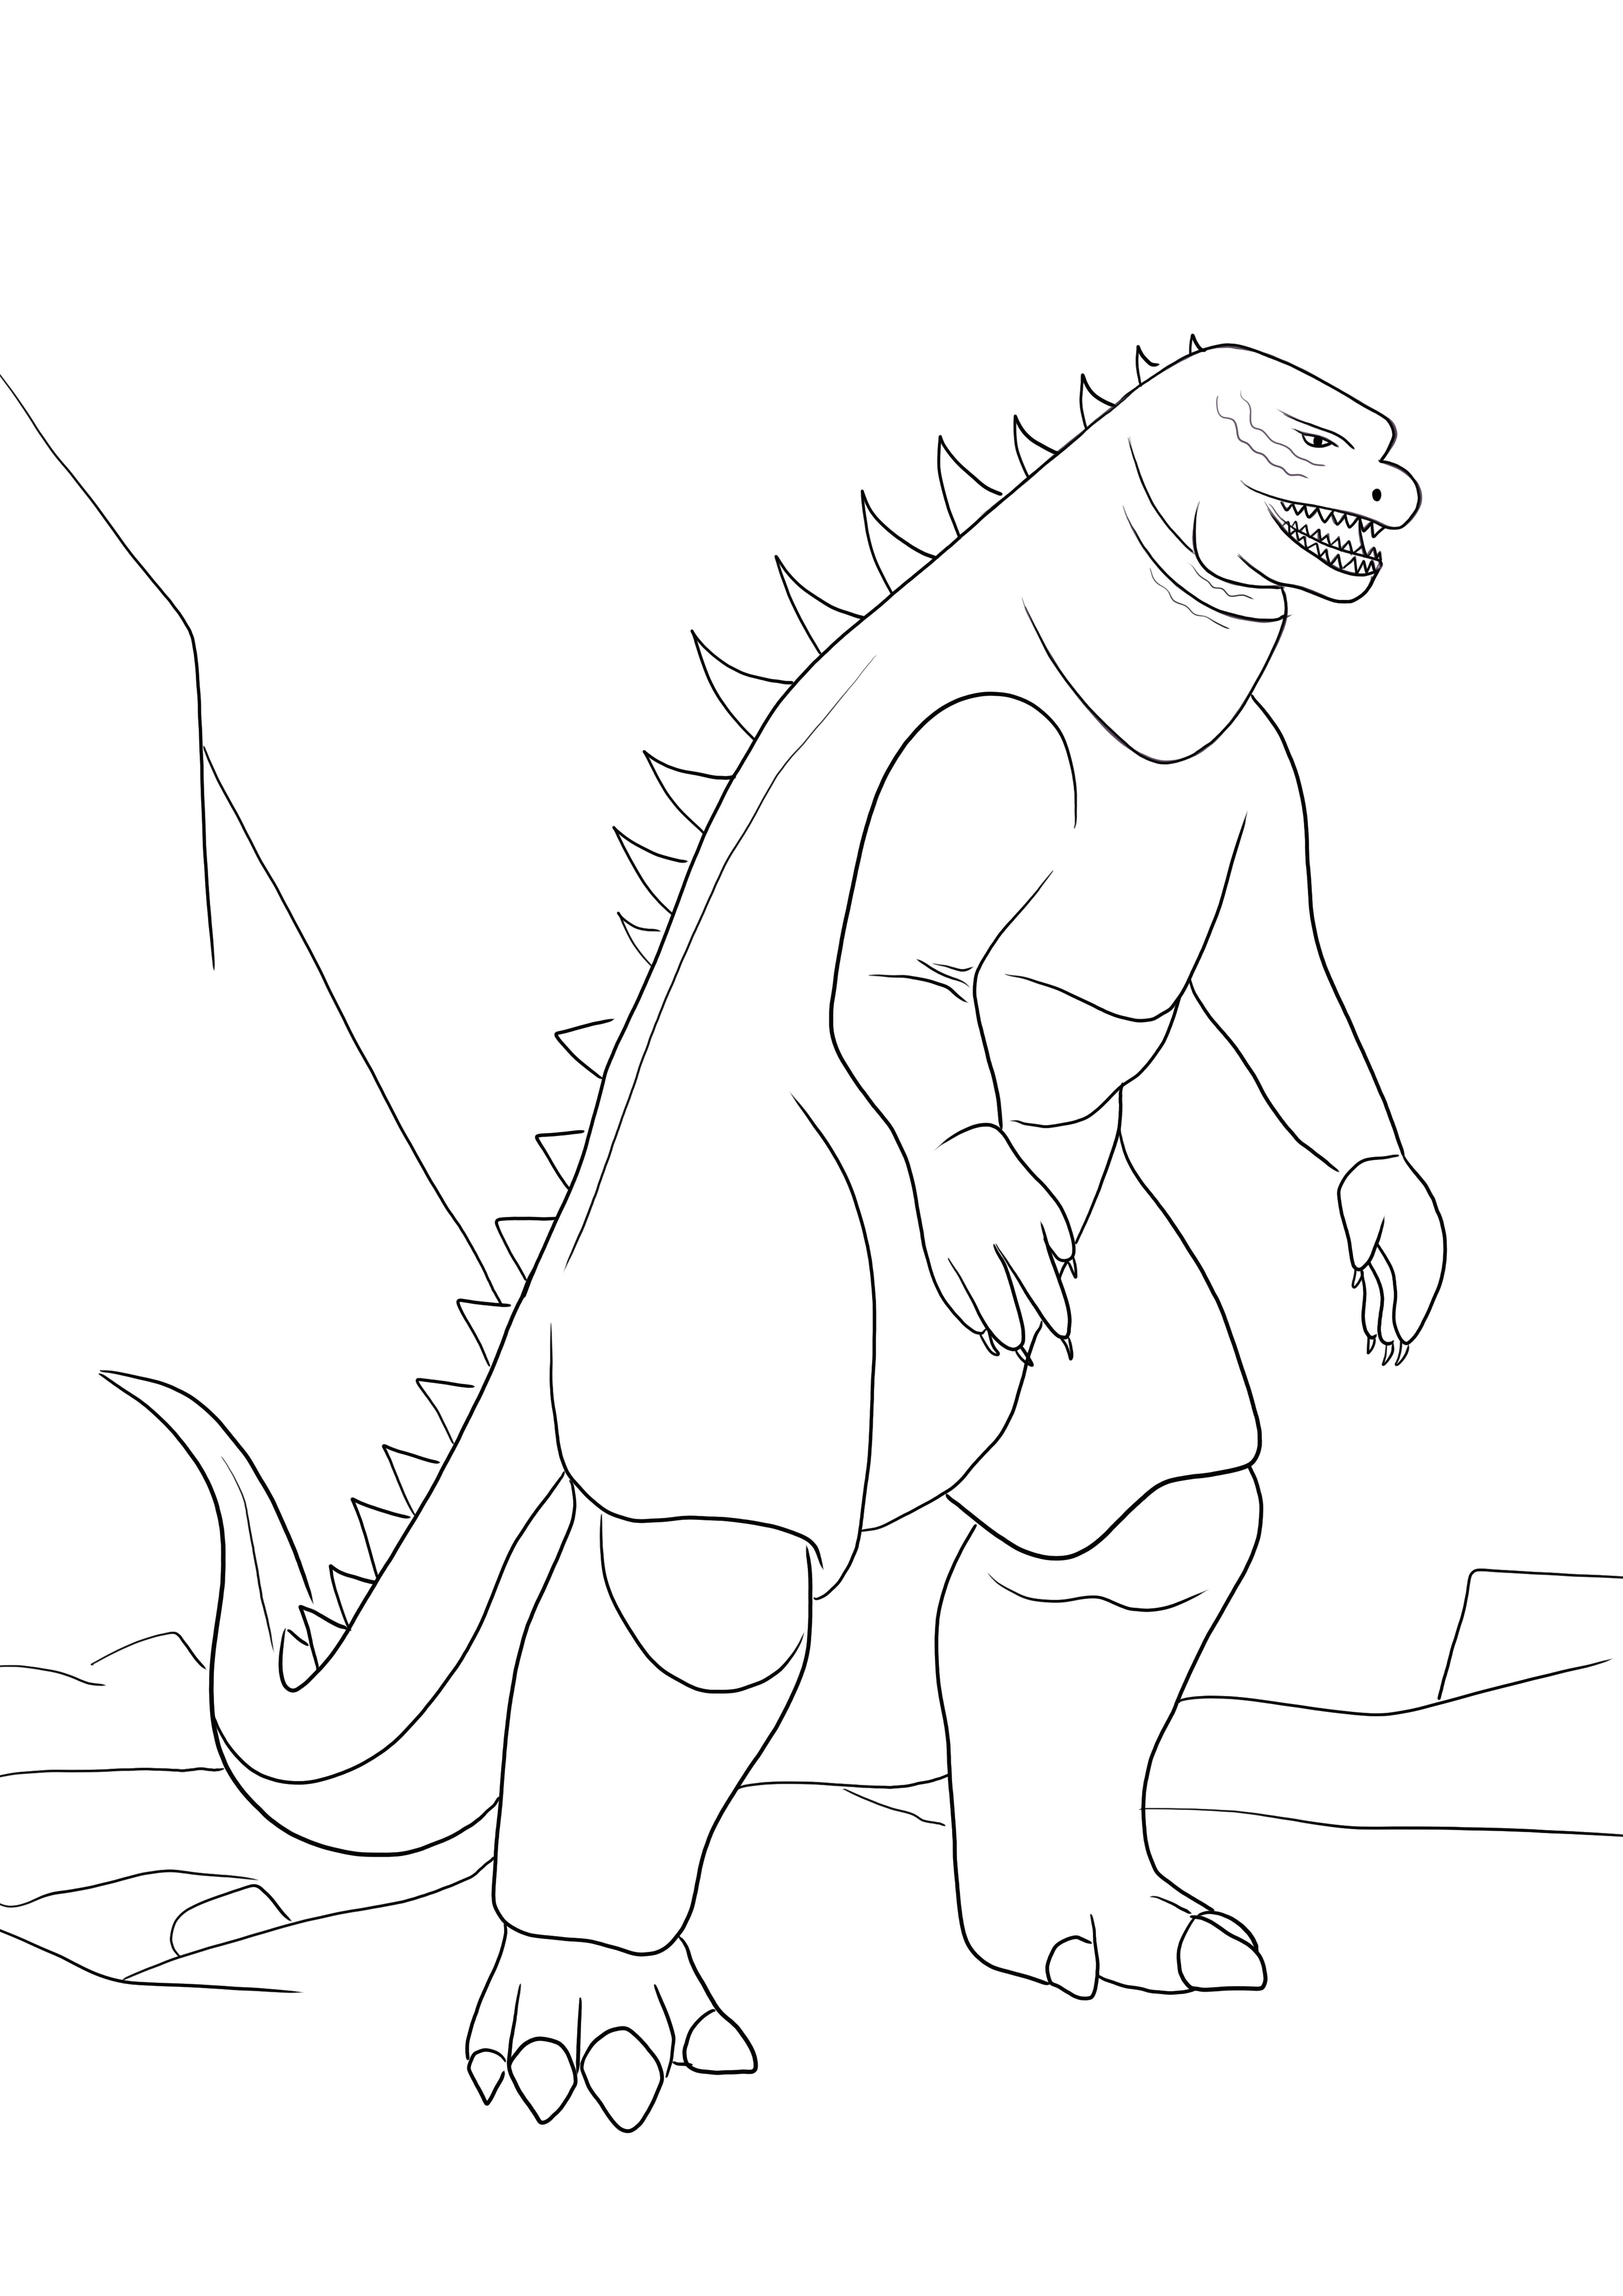 Şiddetli Godzilla canavarı boyama sayfası indirmek için ücretsiz veya yazdırması kolay